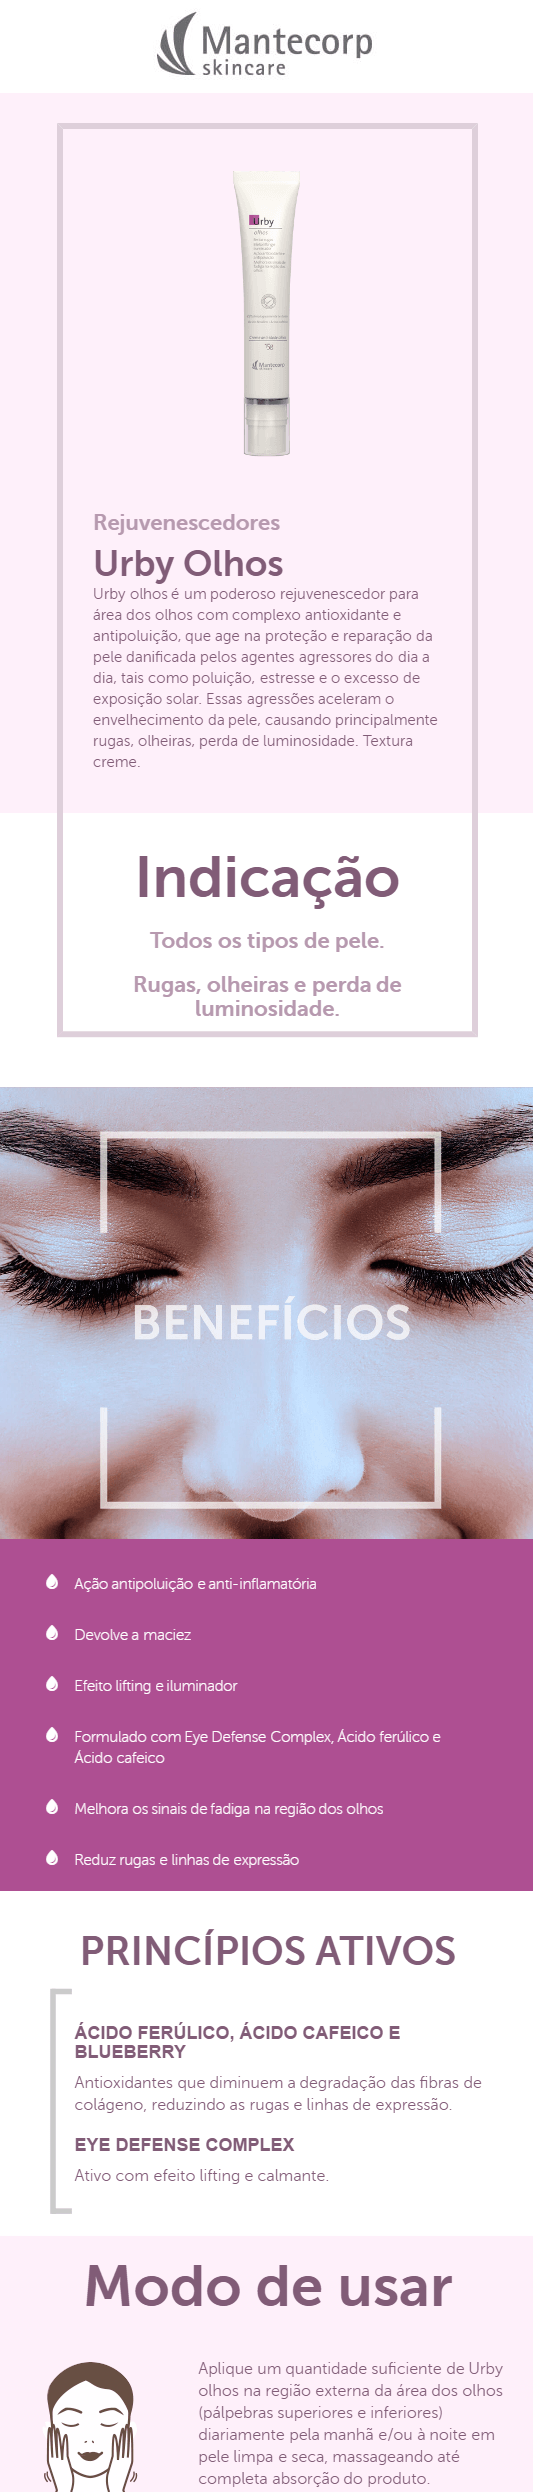 Rejuvenescedor para Área dos Olhos Mantecorp Skincare - Urby Olhos